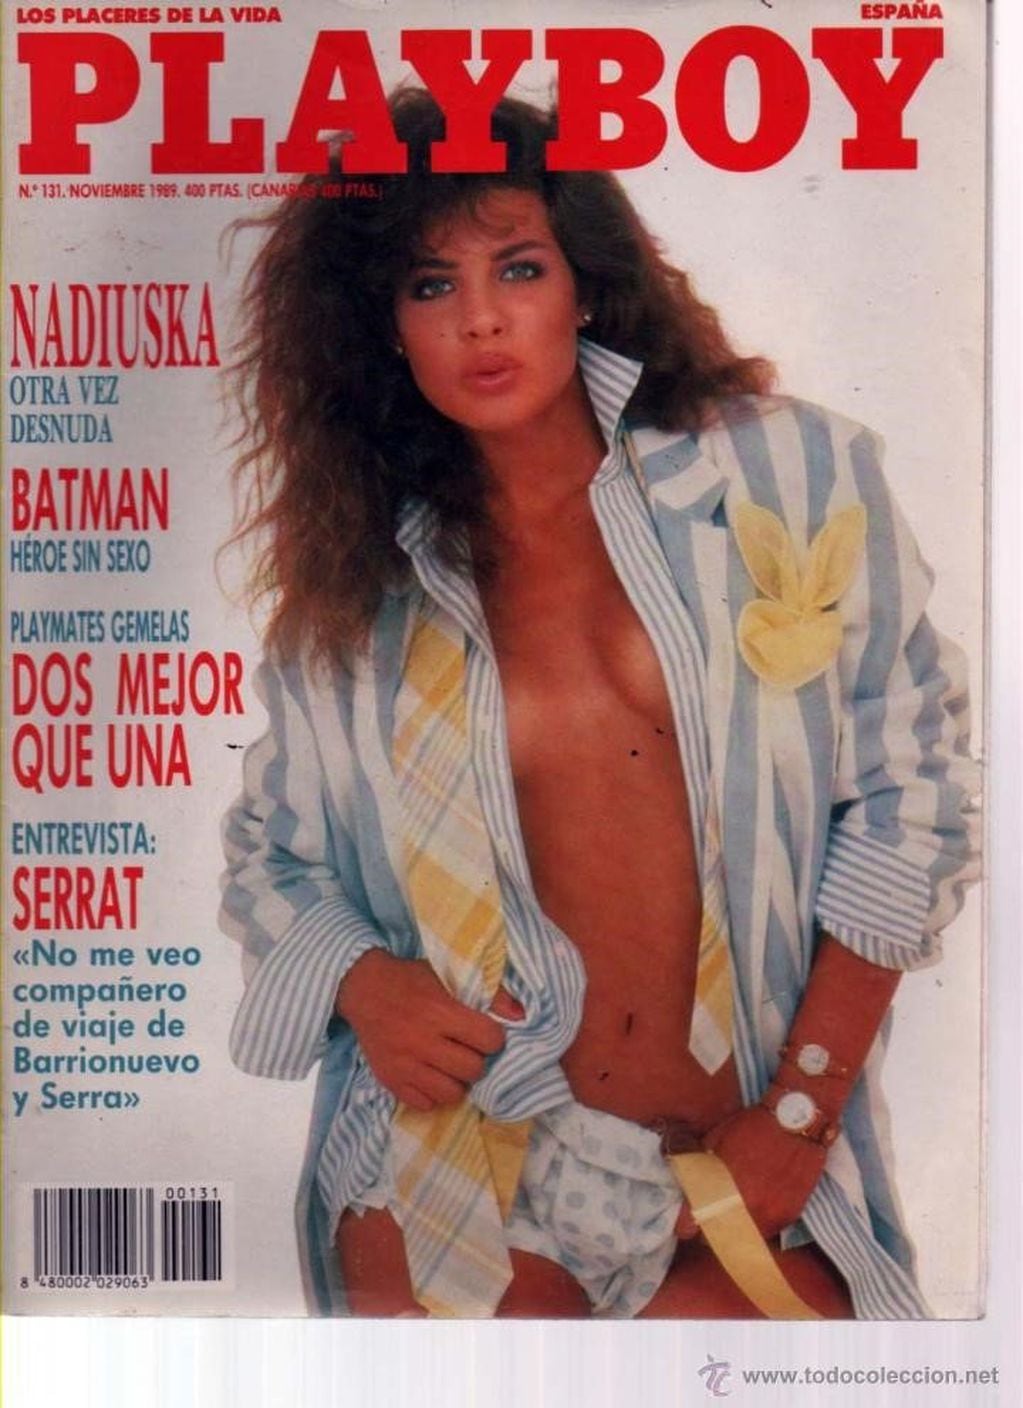 Nadiuska, la actriz que posó para Playboy y que actuó con Olmedo y Arnold  Schwarzenegger, llegó a alimentarse de la basura